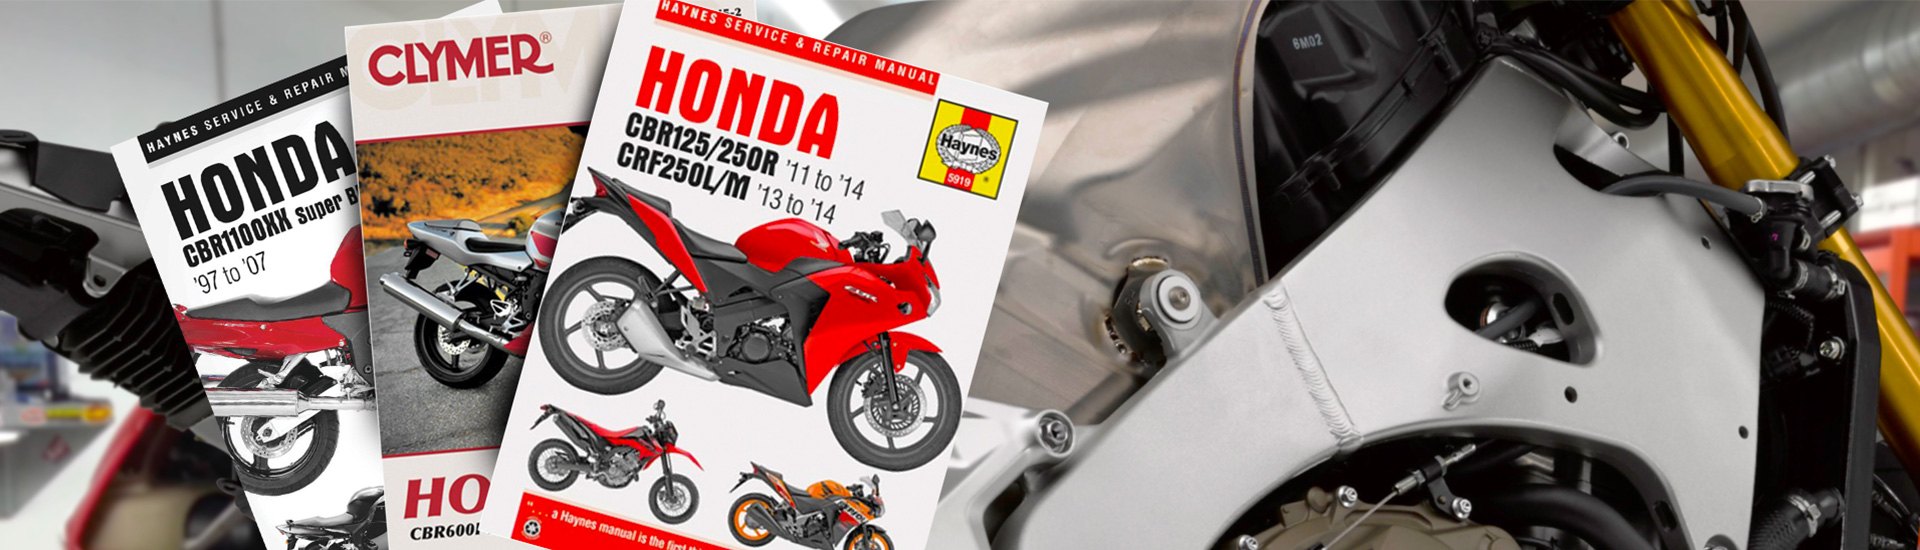 Motorcycle Repair Manual